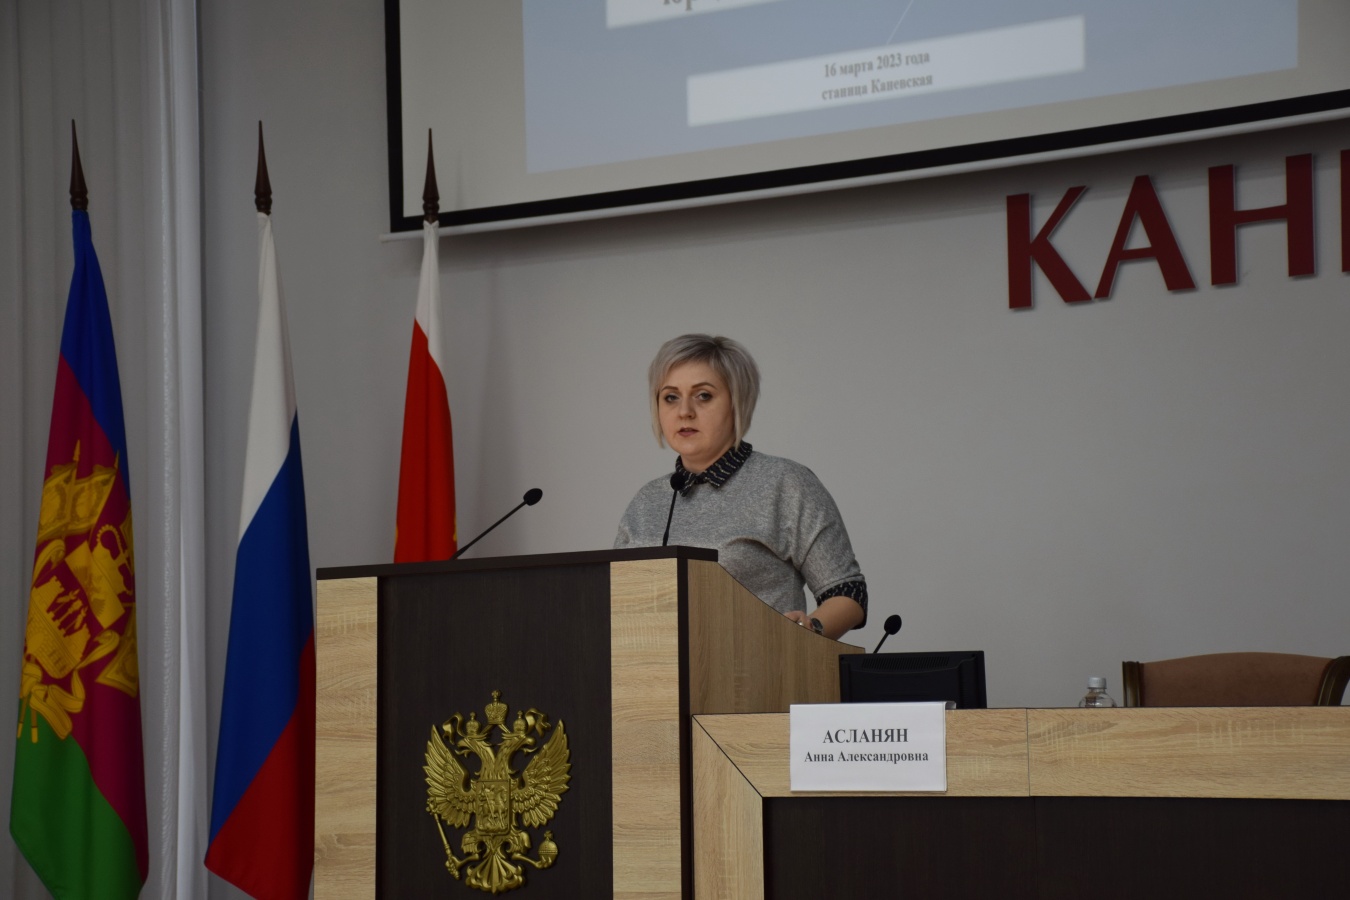 Семинар по вопросам организации ведения делопроизводства, архивной, юридической и кадровой работы состоялся в Каневской